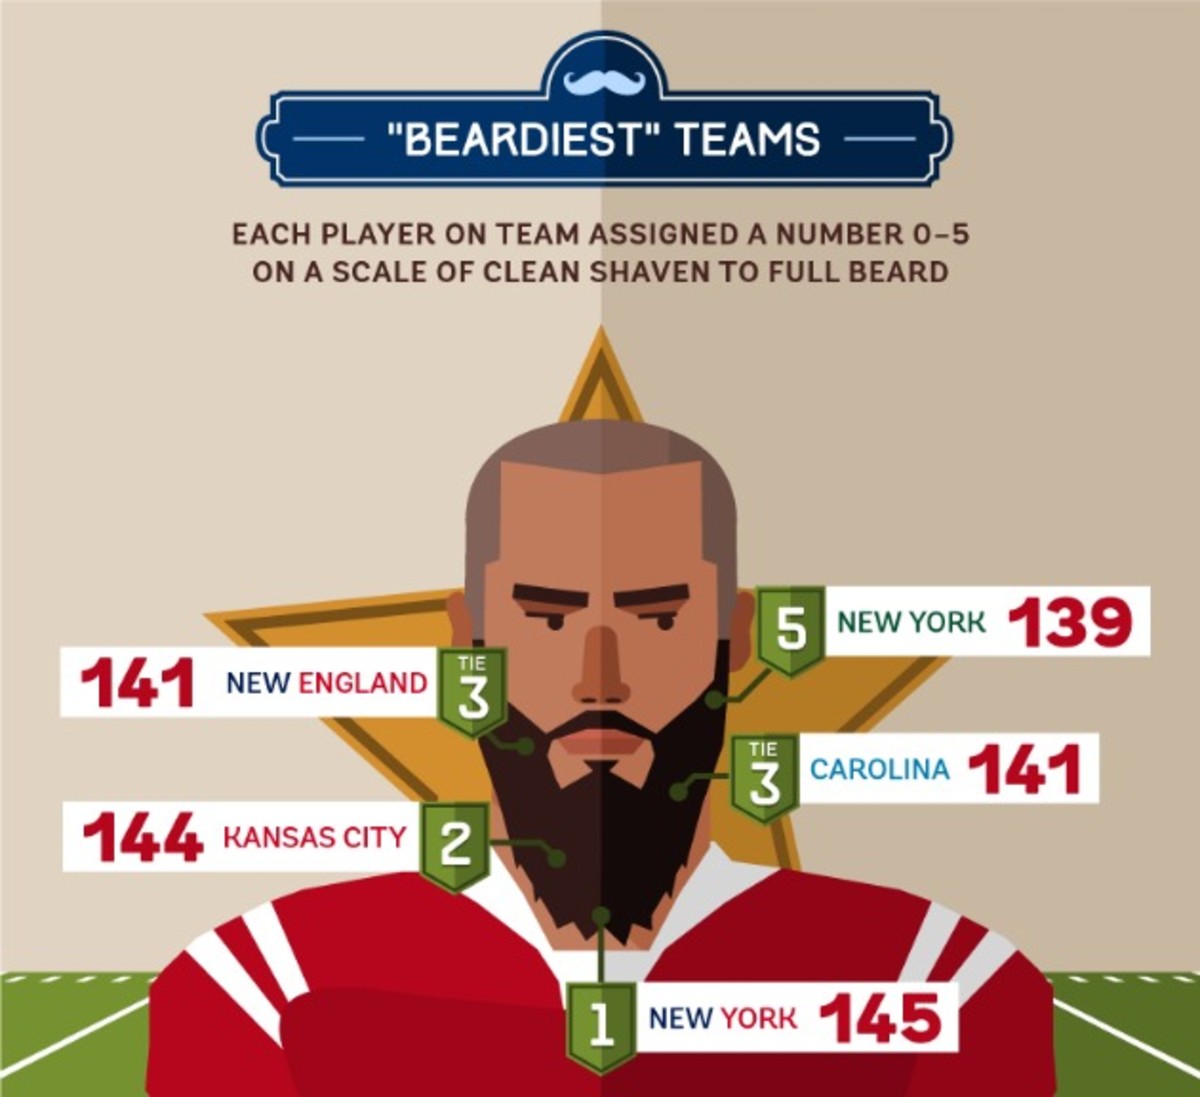 NFL-new-york-giants-beard.jpg